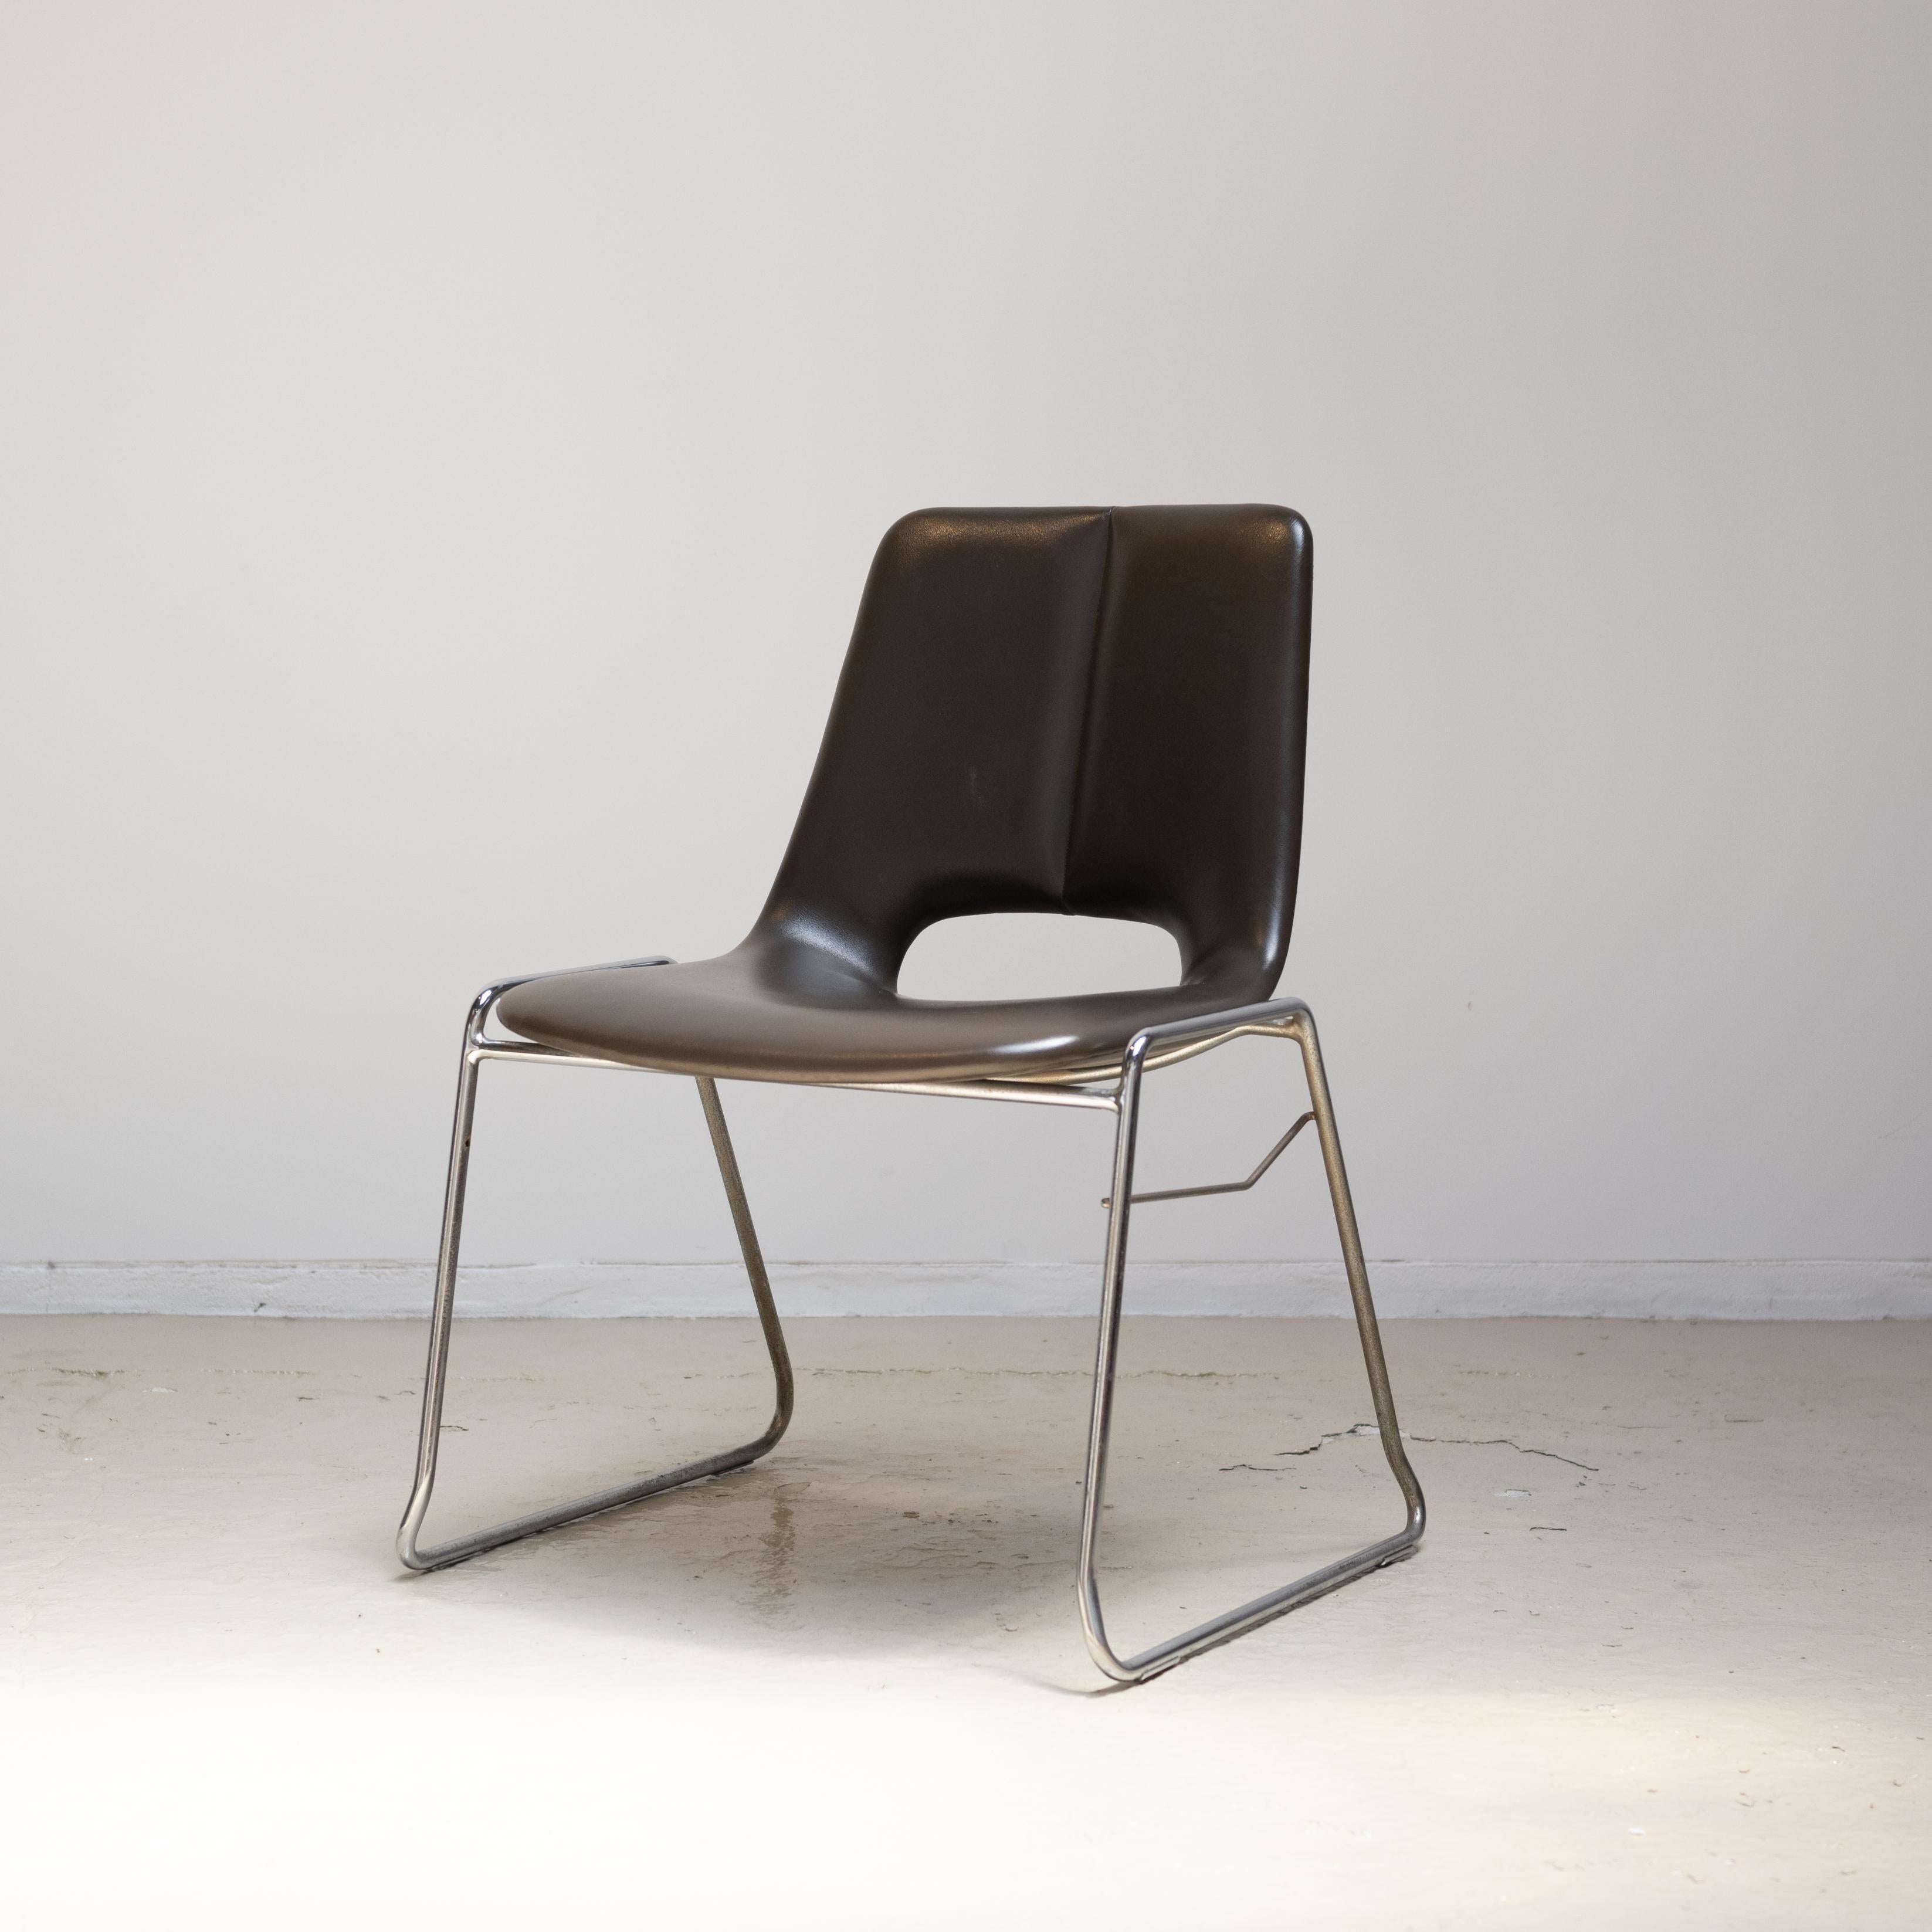 Une chaise qui a été conçue et fabriquée par Tendo Mokko.
Ce modèle a été fabriqué et vendu de 1974 à 1979.
Conçu pour être empilé.
Faux cuir et métal.
Il manque une barre entre les jambes droites.


